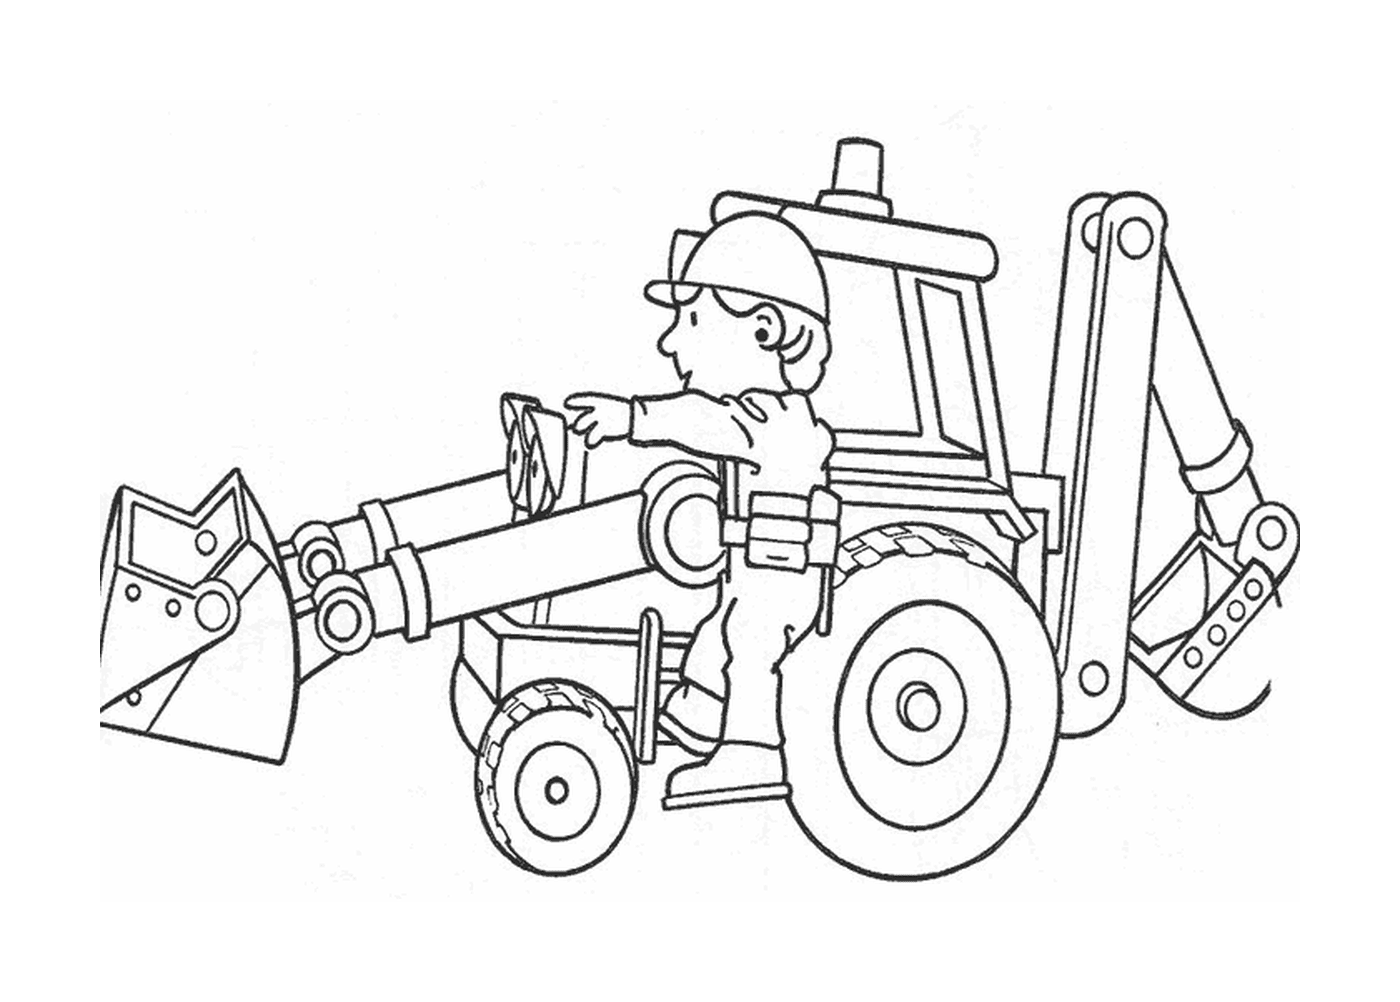  Un uomo seduto su un trattore 